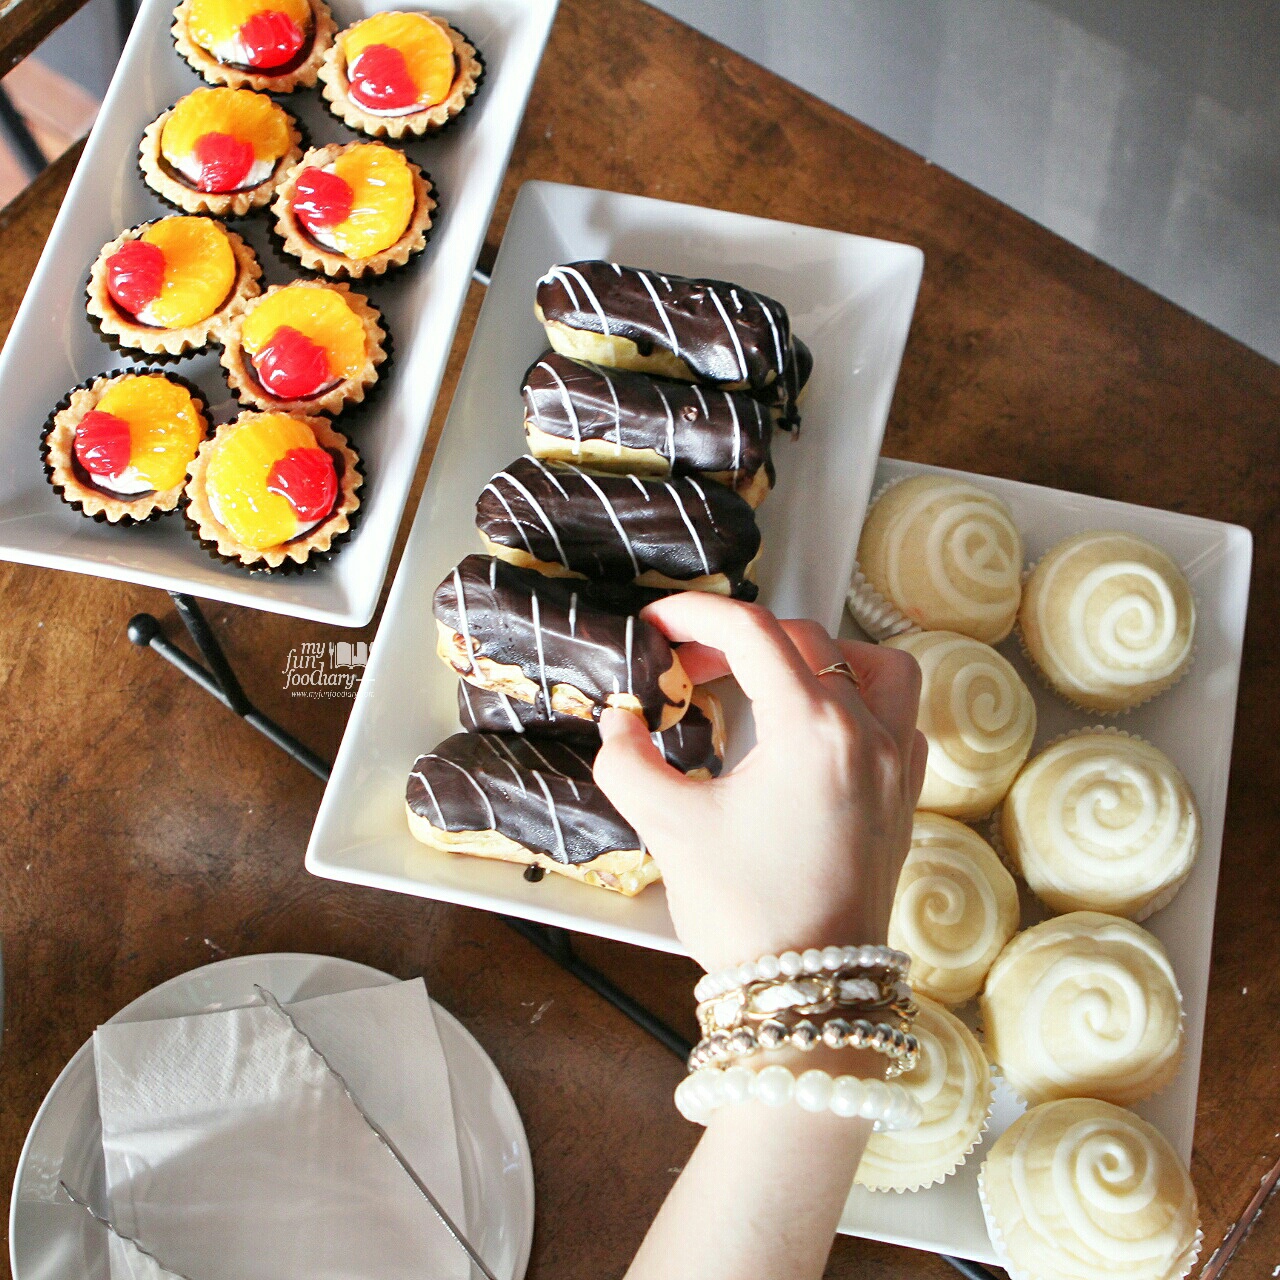 Sweet Desserts at BART Artotel by Myfunfoodiary